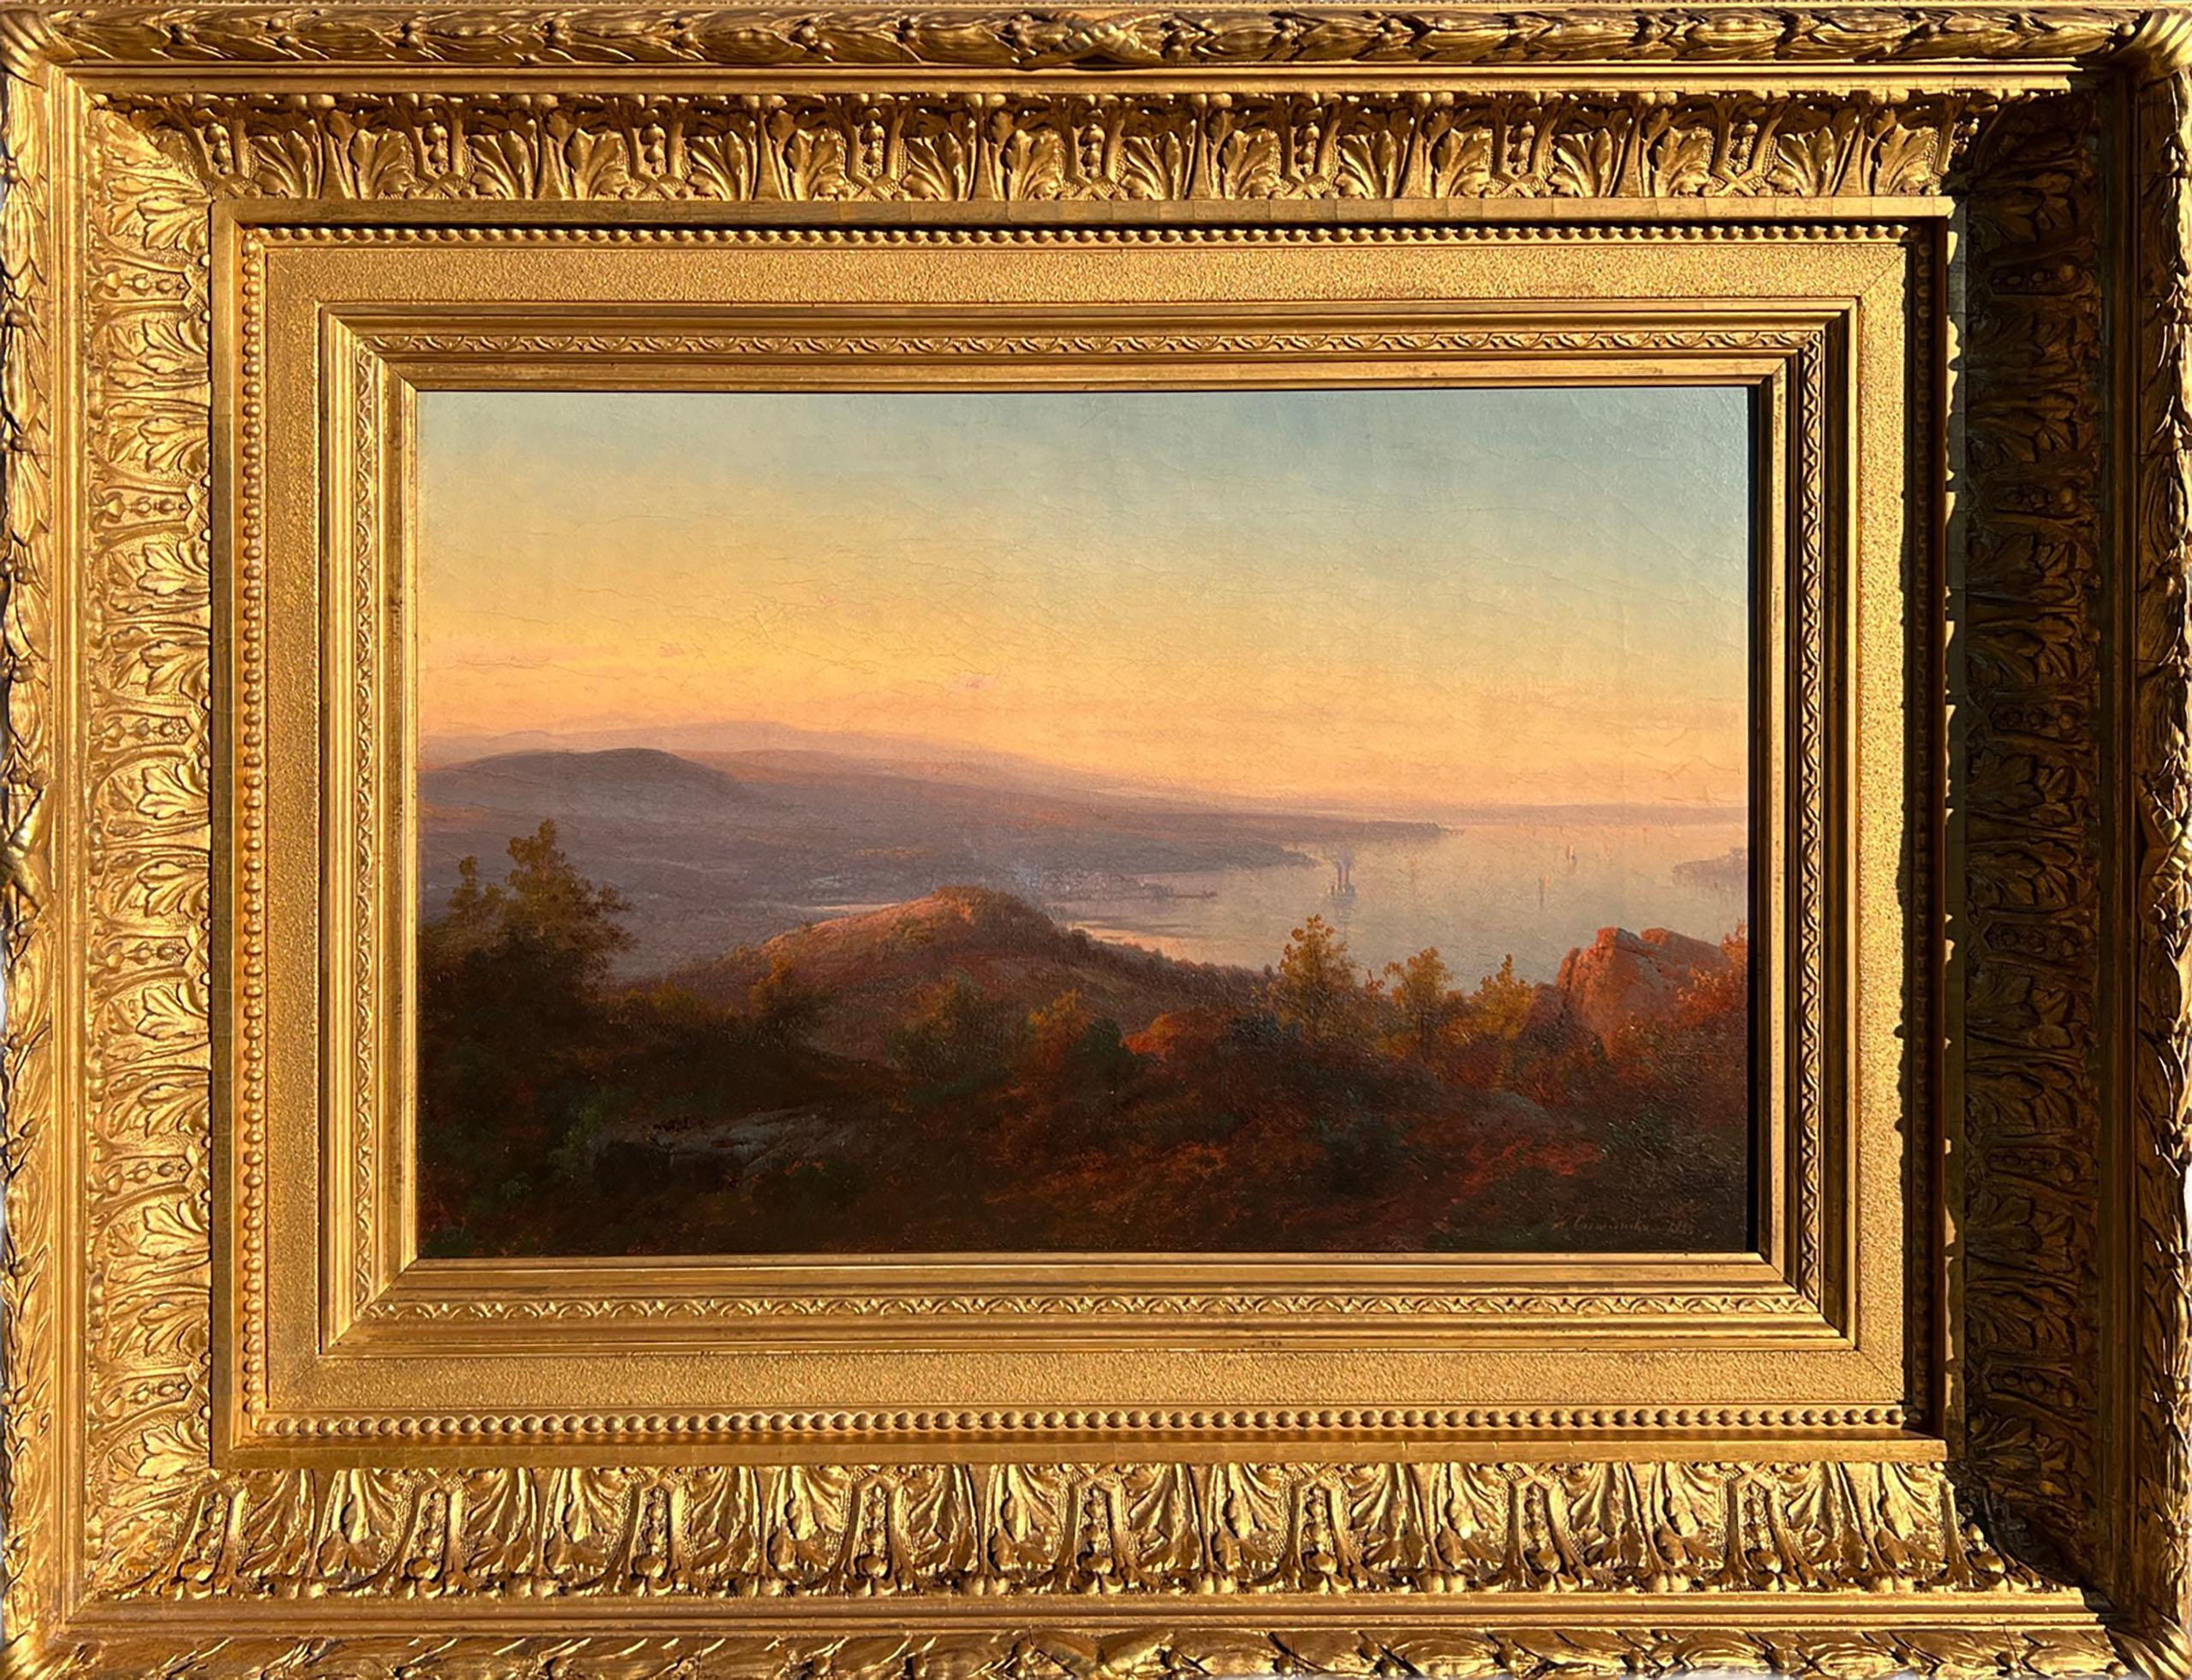 Gemalt von Hudson River School Künstler Johann Hermann Carmiencke, "Hudson River Landscape" 1865 ist Öl auf Leinwand, misst 12 x 18 Zoll, und ist signiert und datiert 1865 auf der unteren rechten Seite. Das Werk ist in einem eleganten, zeitgemäßen